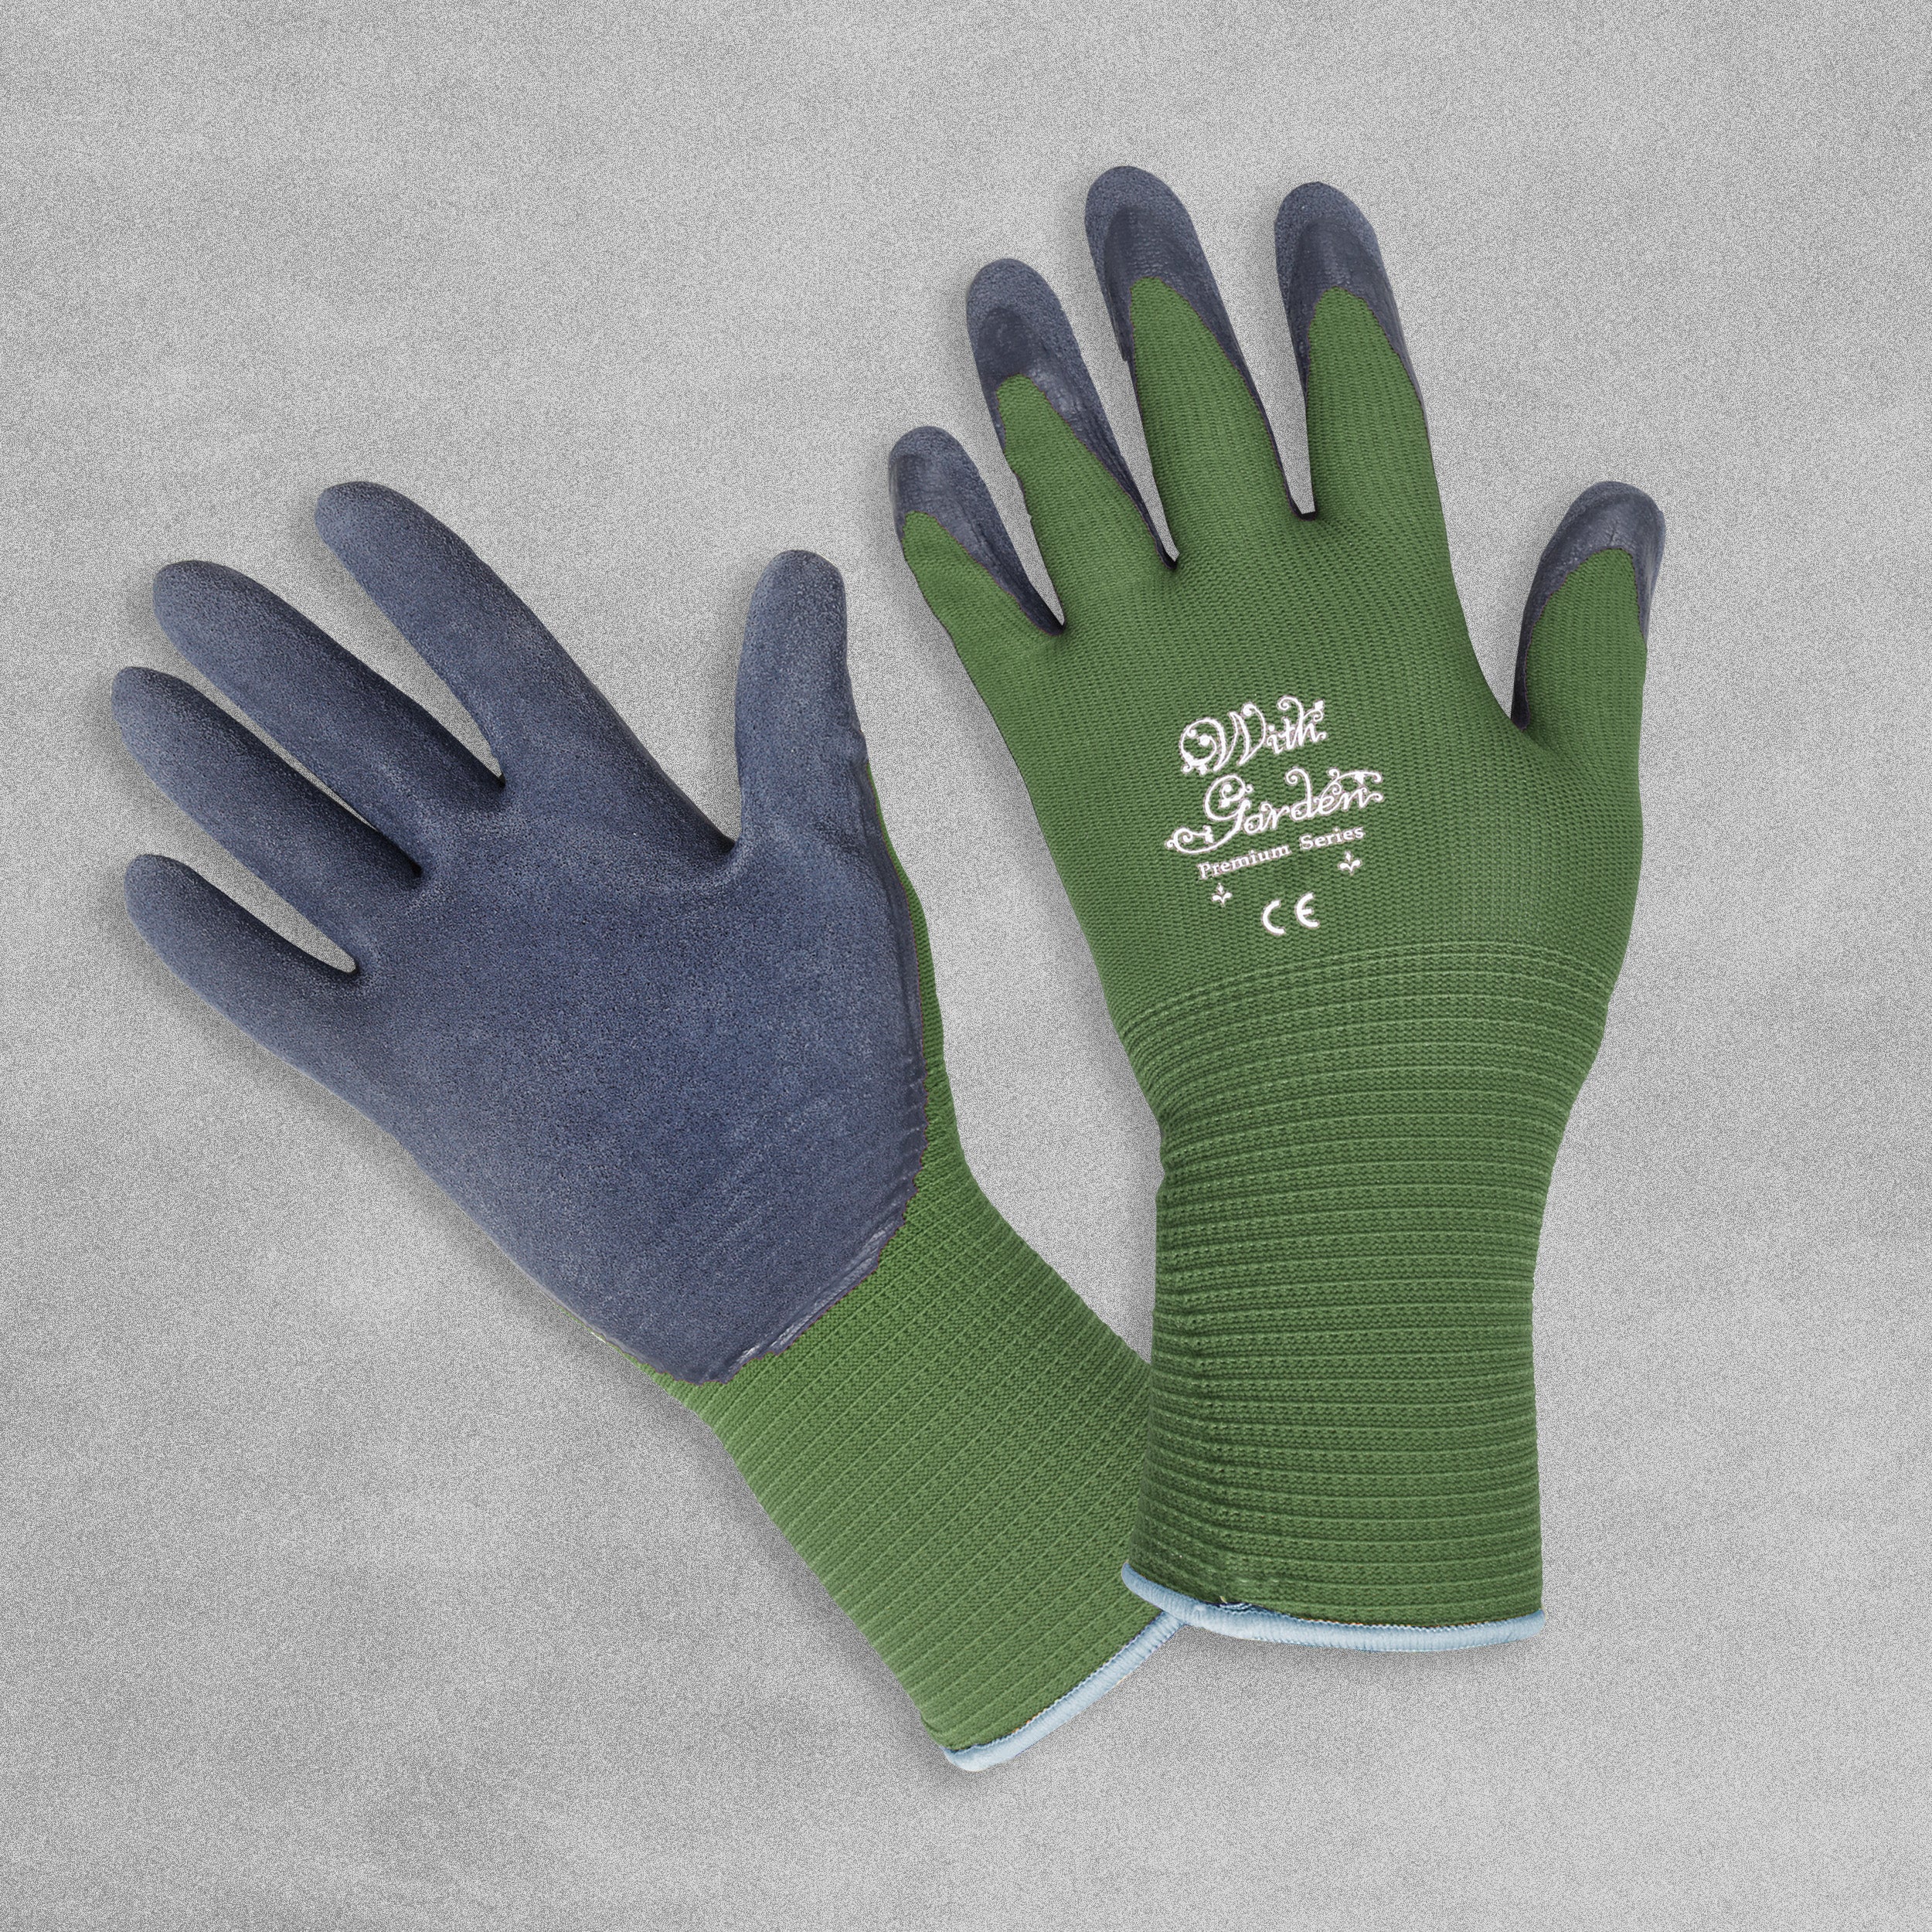 With Garden Premium Garden gloves - Green